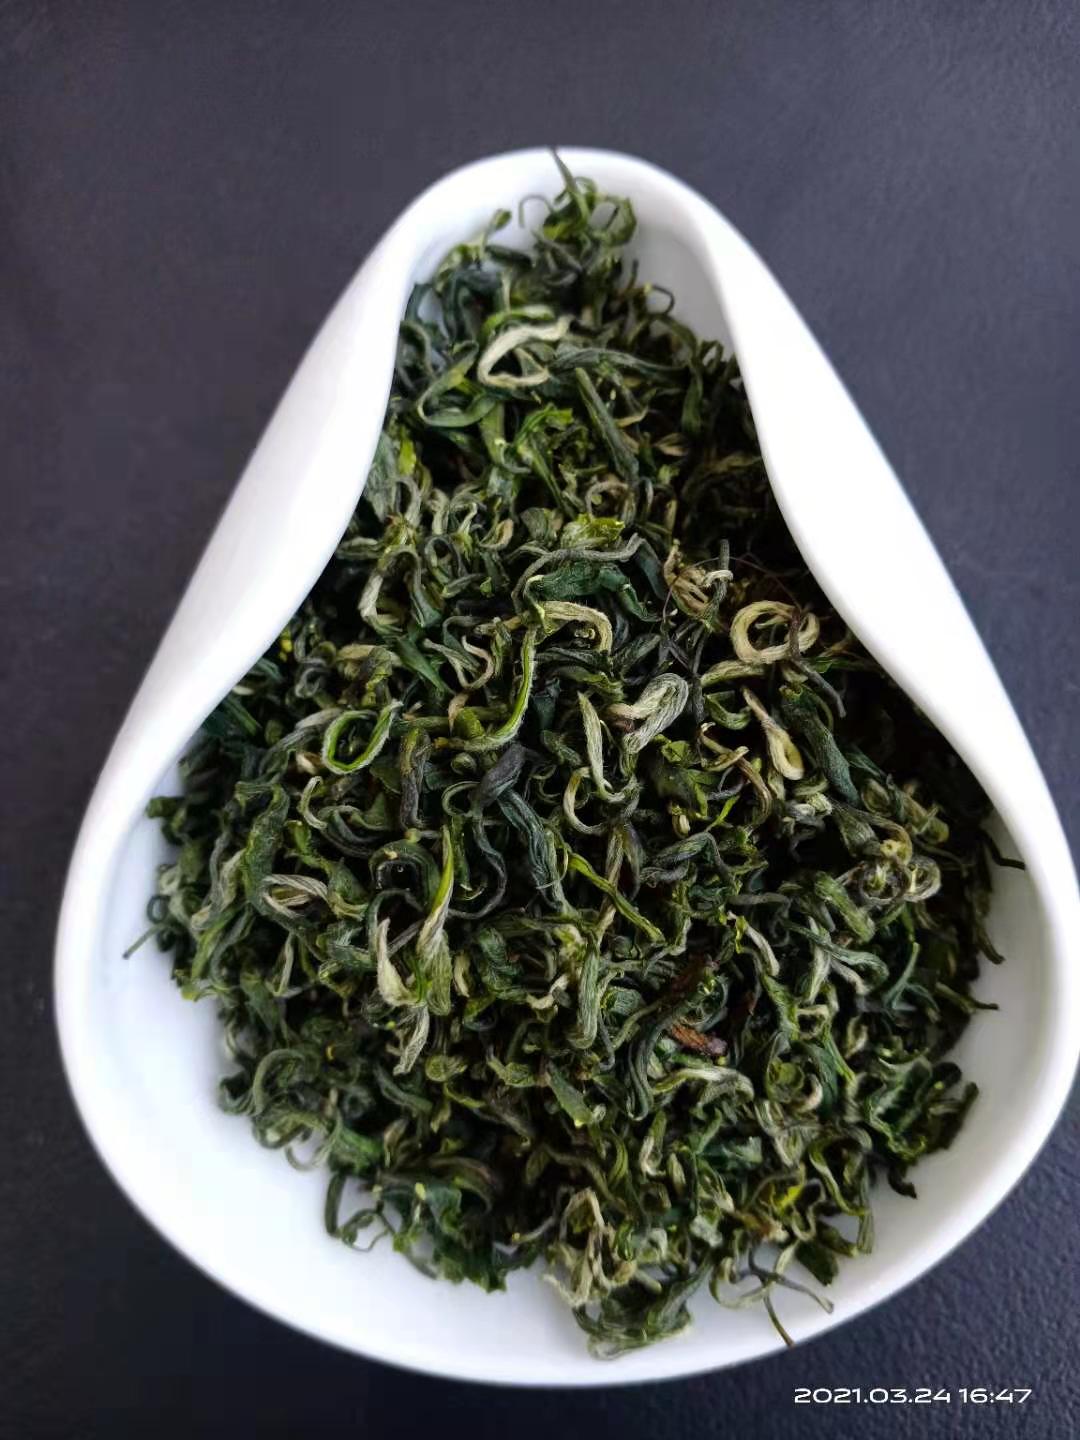 上海炒青绿茶供应,有机绿茶供应